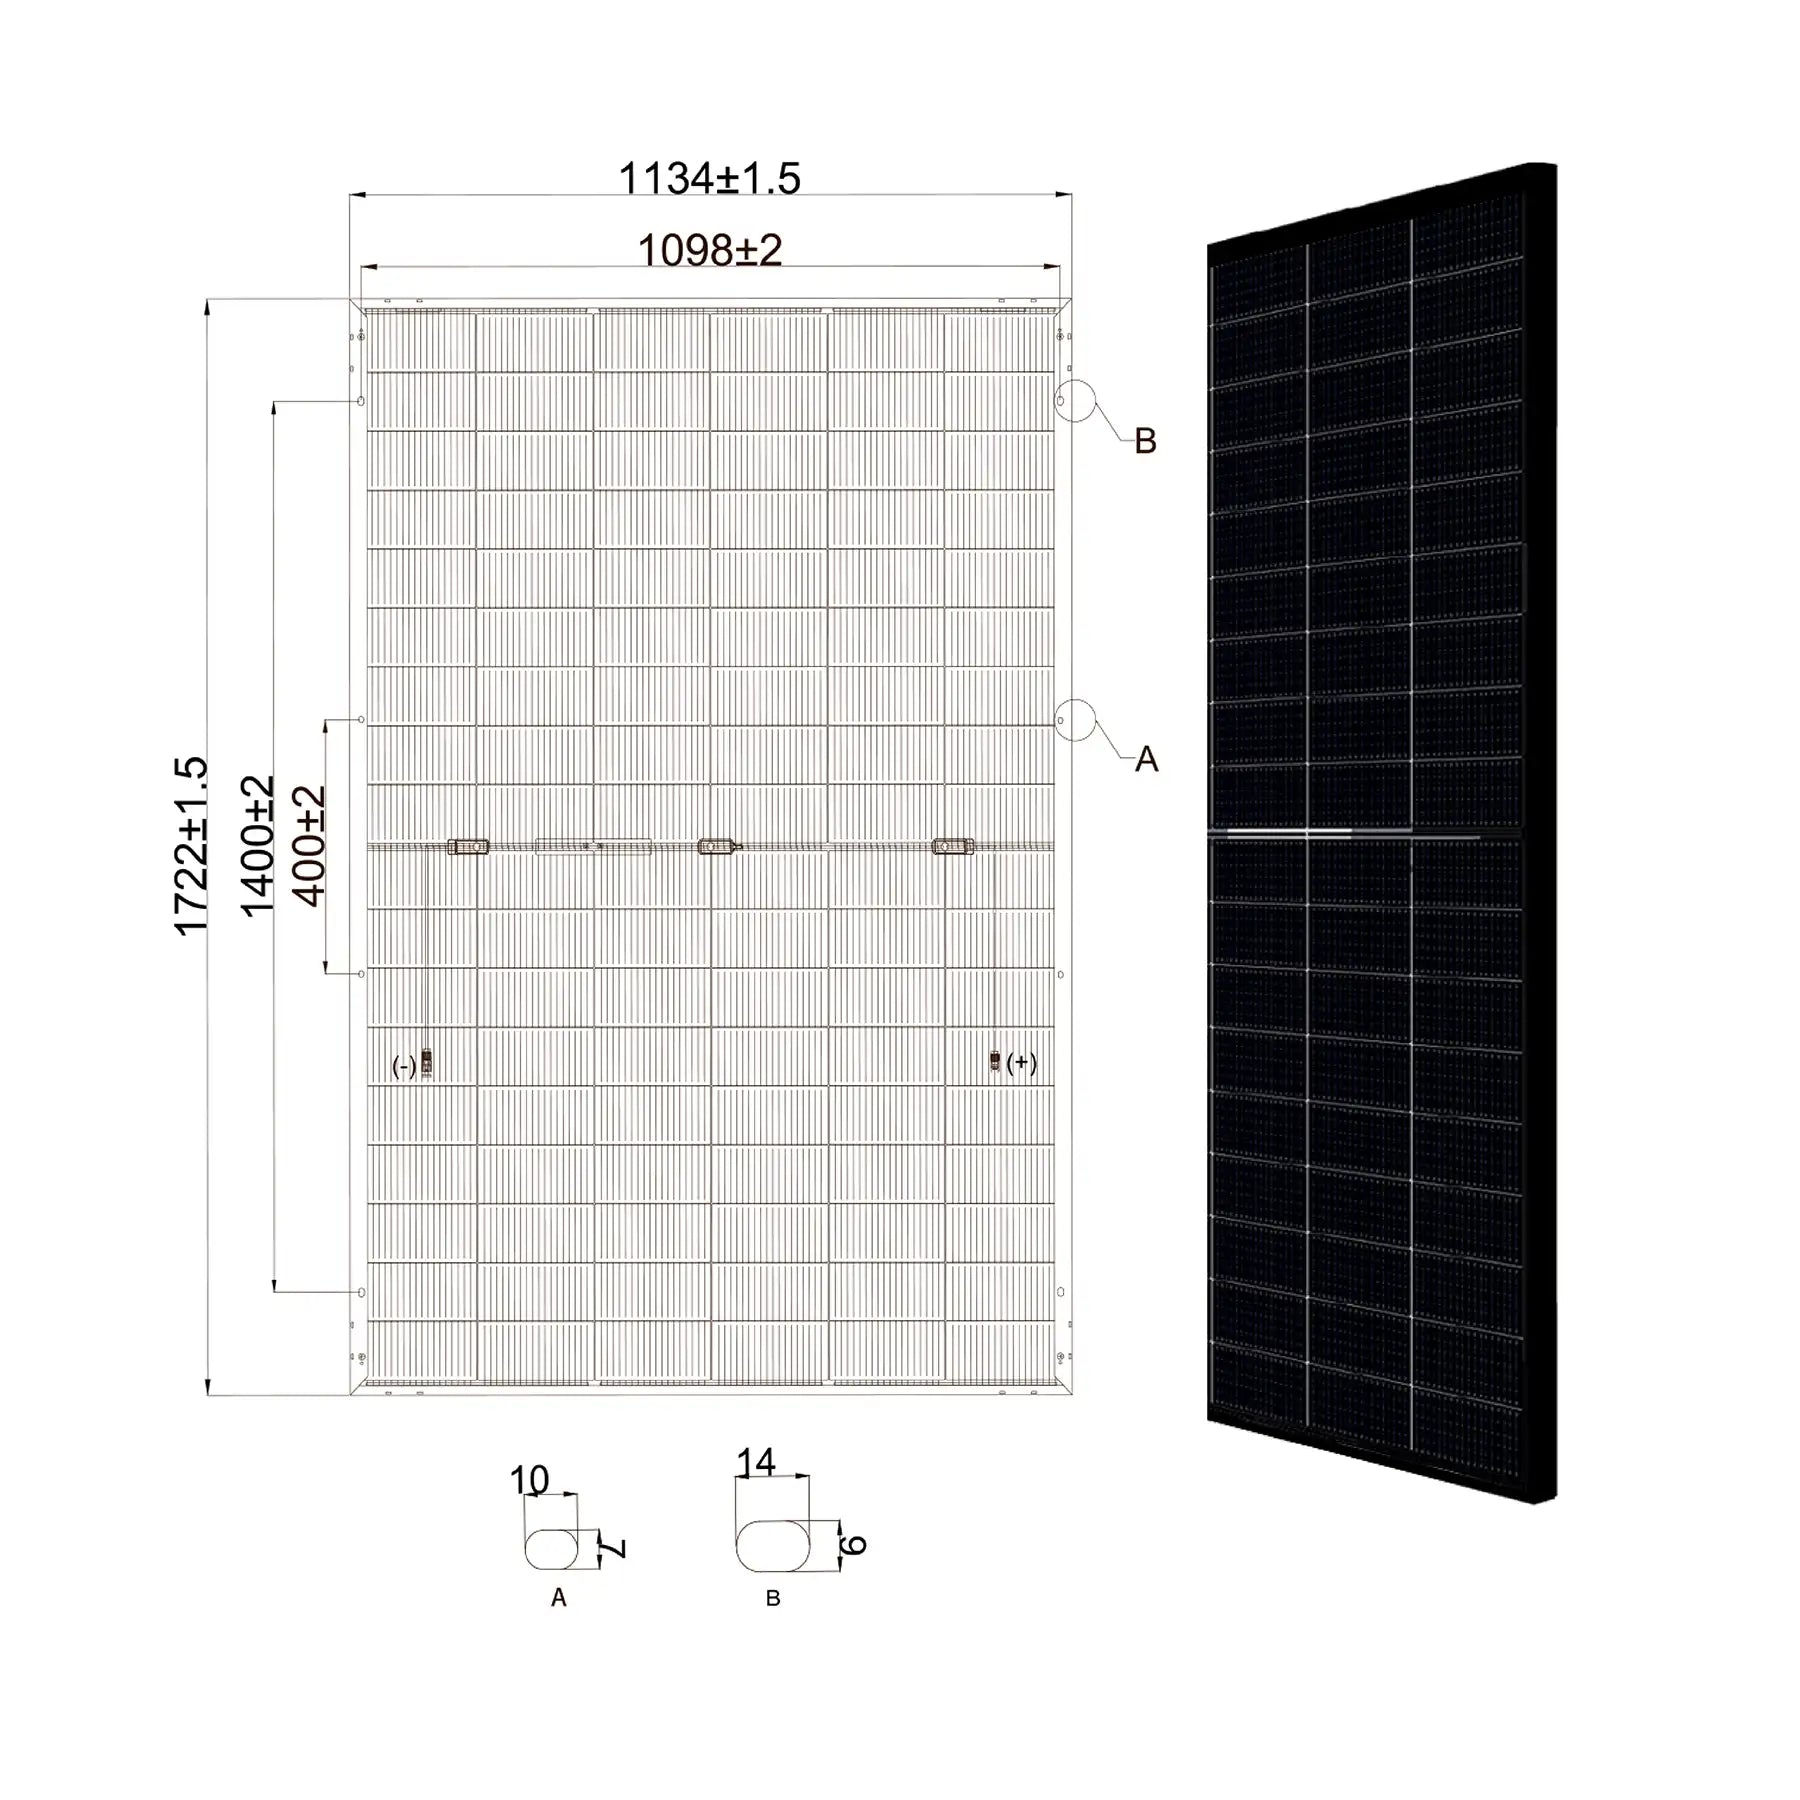 MSMDxxxM10 HJT108DSN 430W Solarmodul Glas-Glas Bifazial HJT